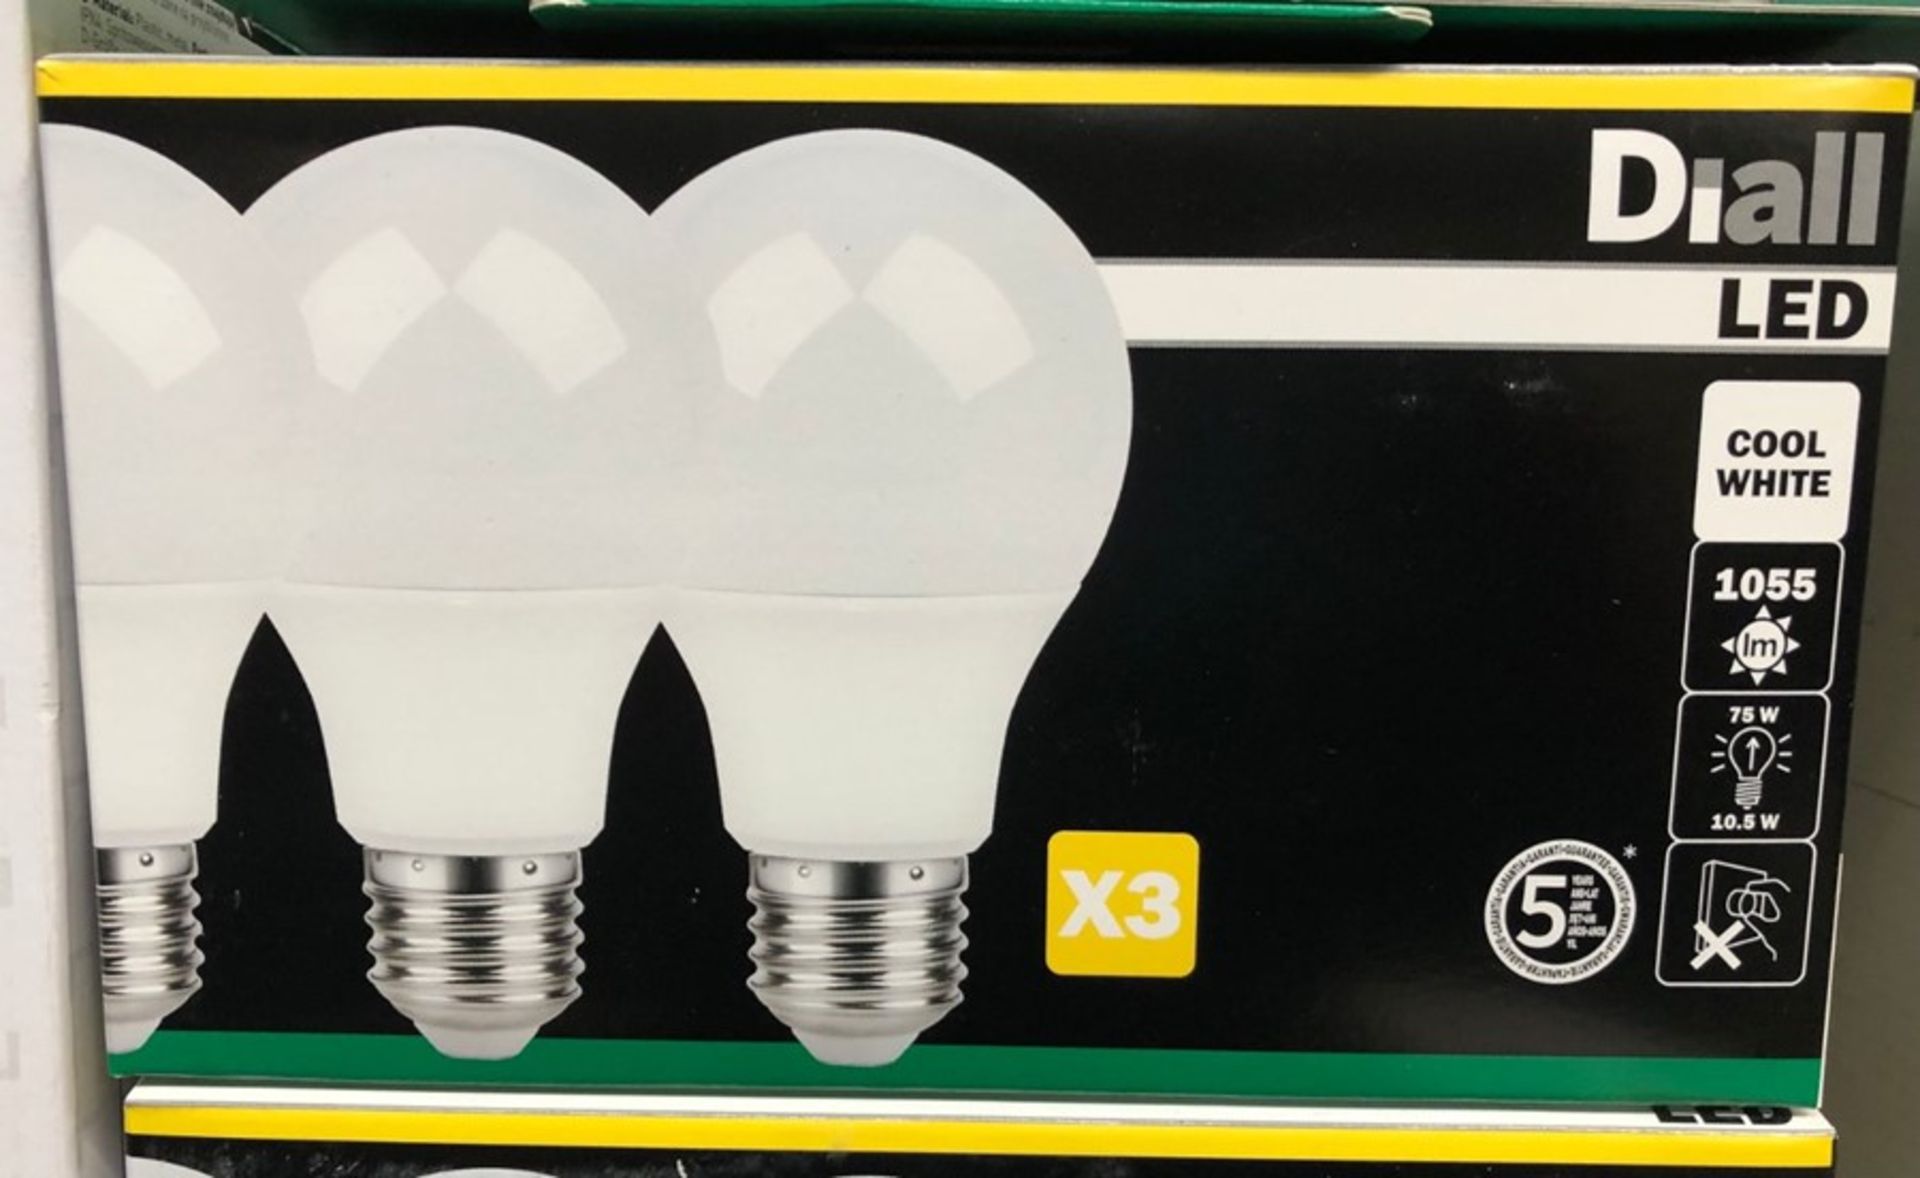 7 X PACKS OF DIALL LED E27 GLS LED LIGHT BULKS (3 BULBS PER PACK) / AS NEW